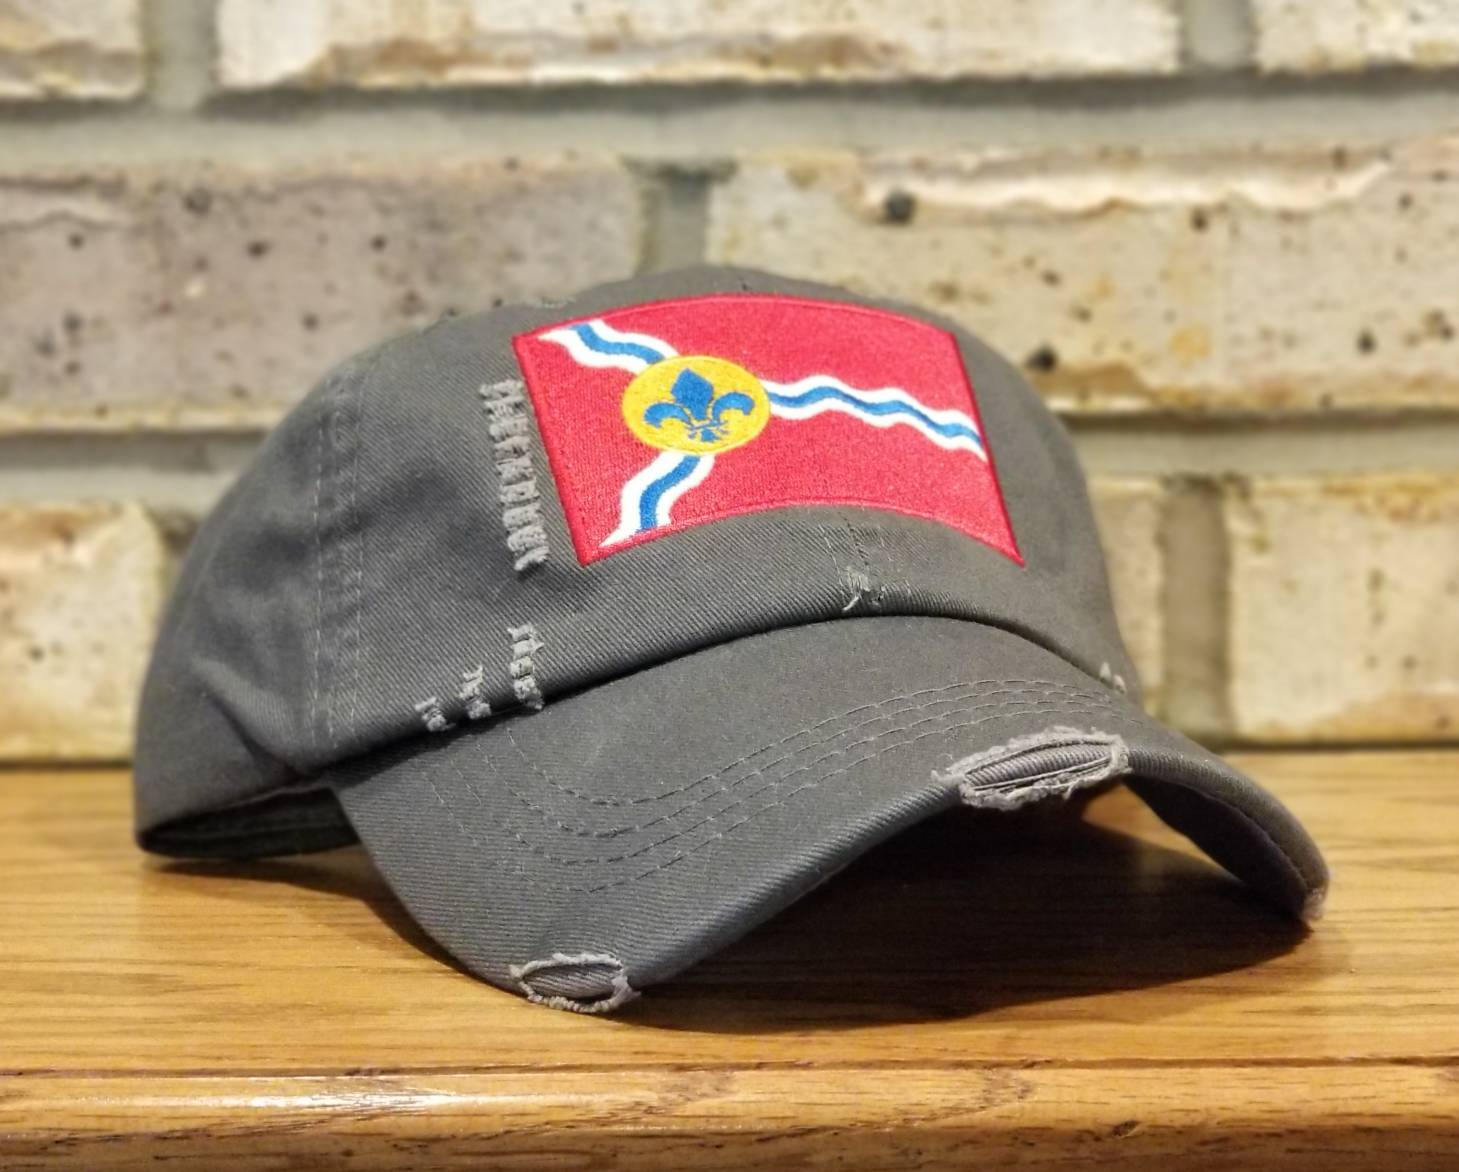 St. Louis Flag Hat - STL hat, Saint Louis City Flag, St Louis Missouri Baseball Cap, fleur-de-lis, Missouri and Mississippi